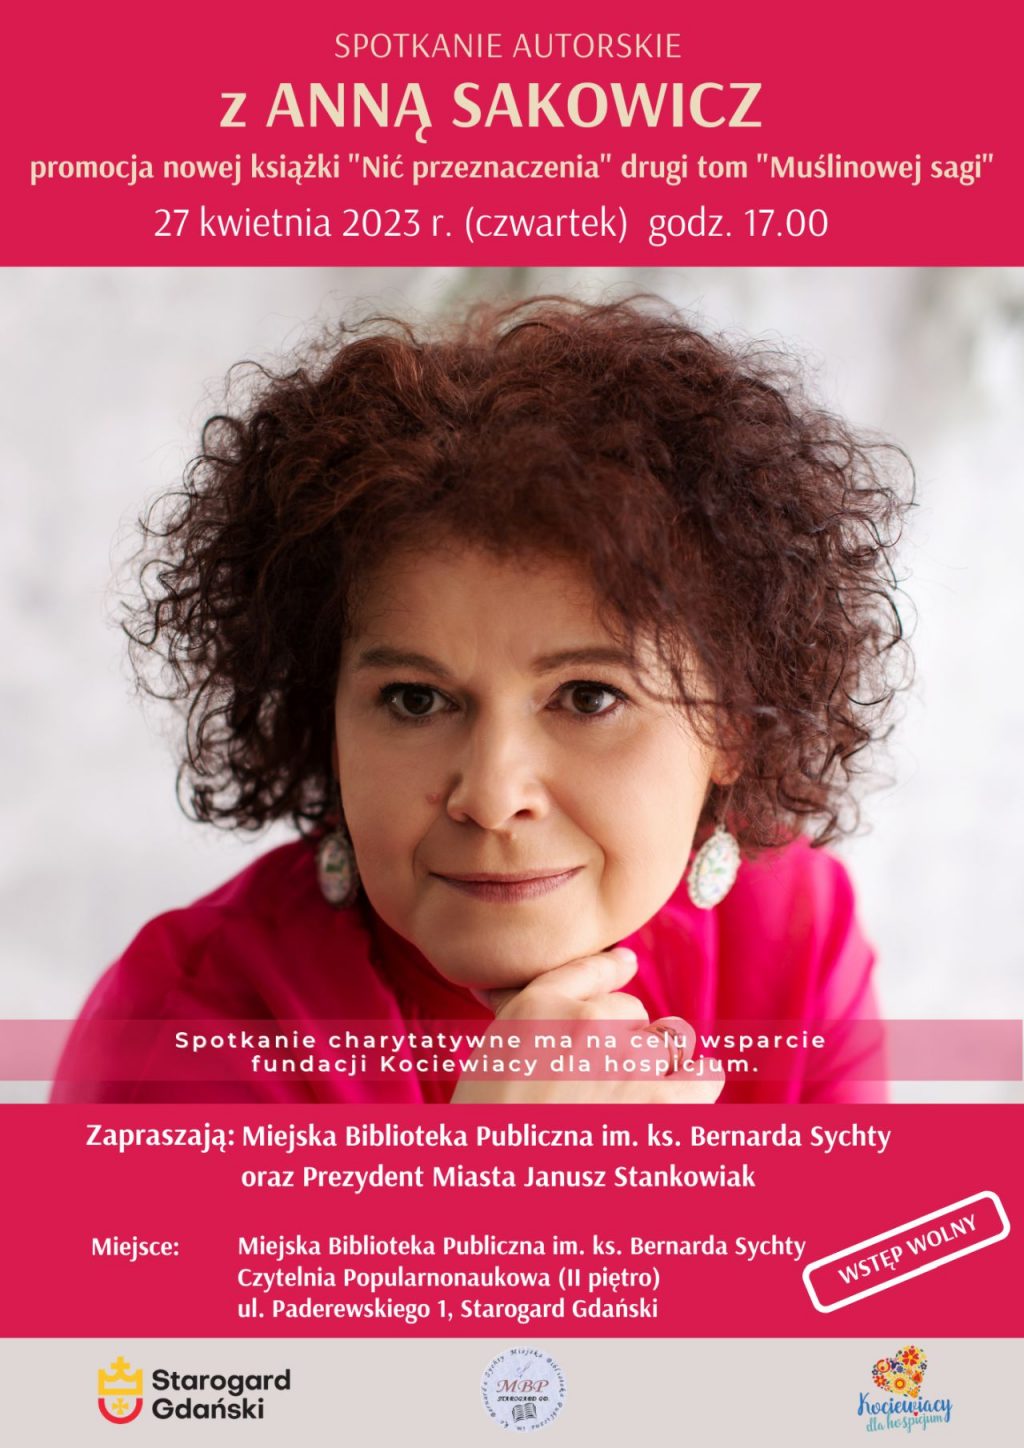 Plakat zawiera informację na temat spotkania autorskiego z panią Anną Sakowicz 27 kwietnia 2023 roku oraz zdjęcie na którym widnieje pani Anna Sakowicz.